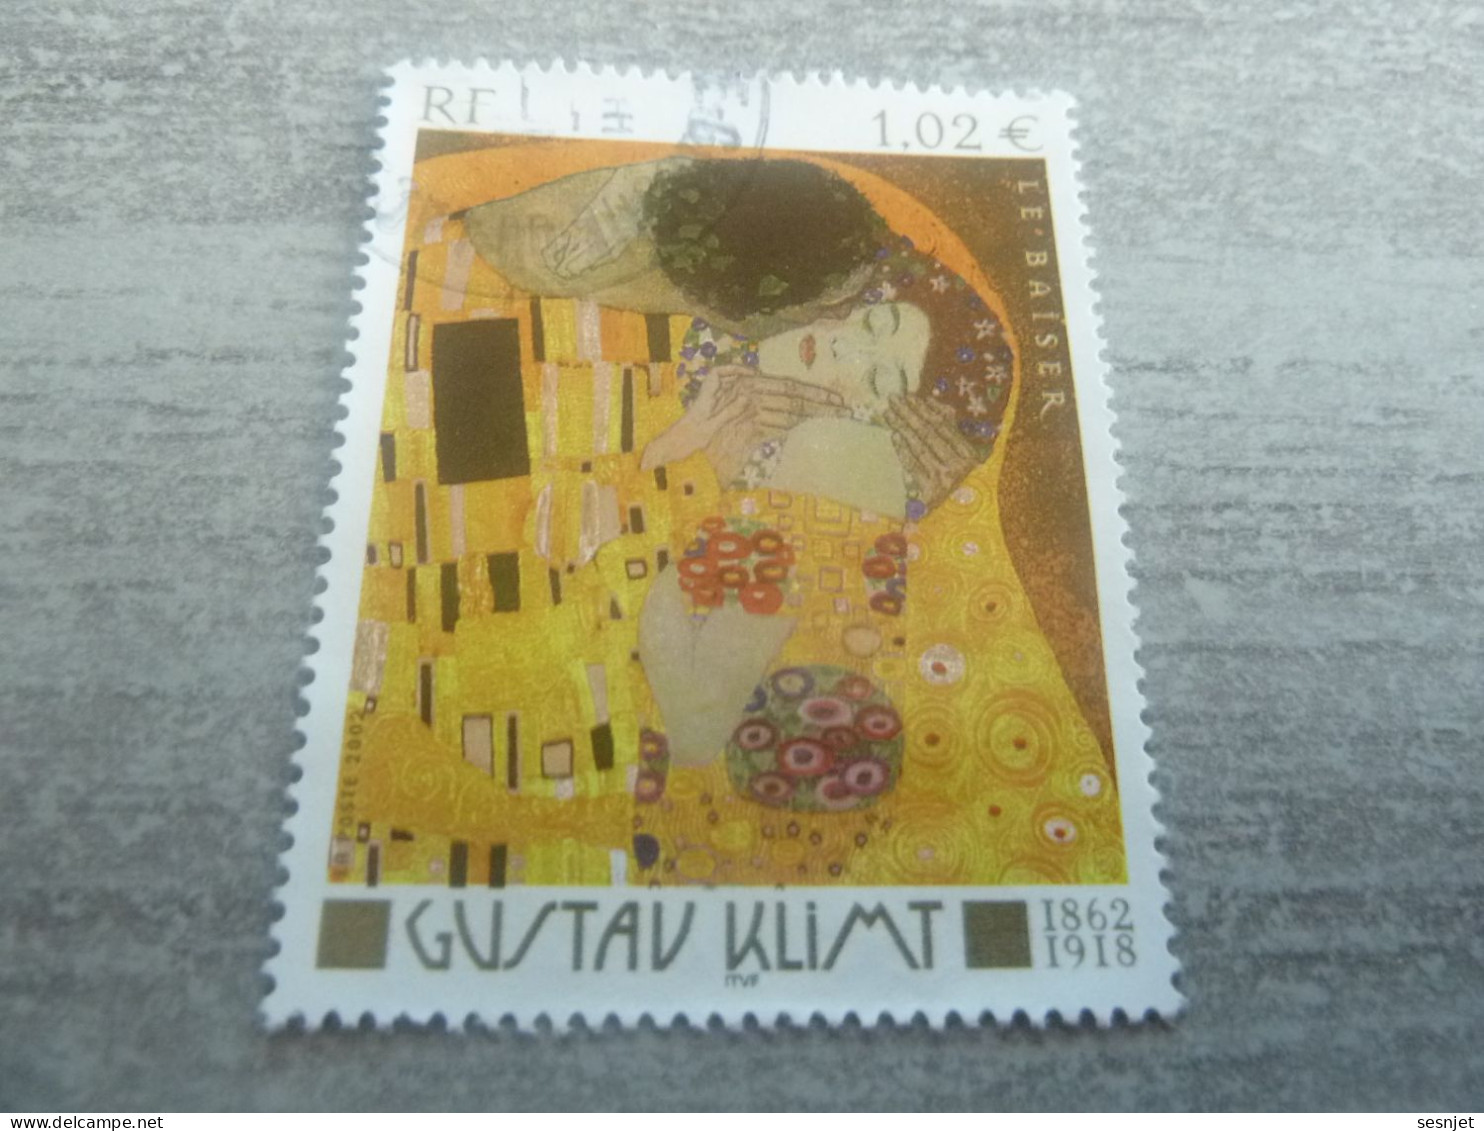 Gustav Klimt (1862-1918) - Le Baiser - 1.02 € - Yt 3461 - Multicolore - Oblitéré - Année 2002 - - Used Stamps